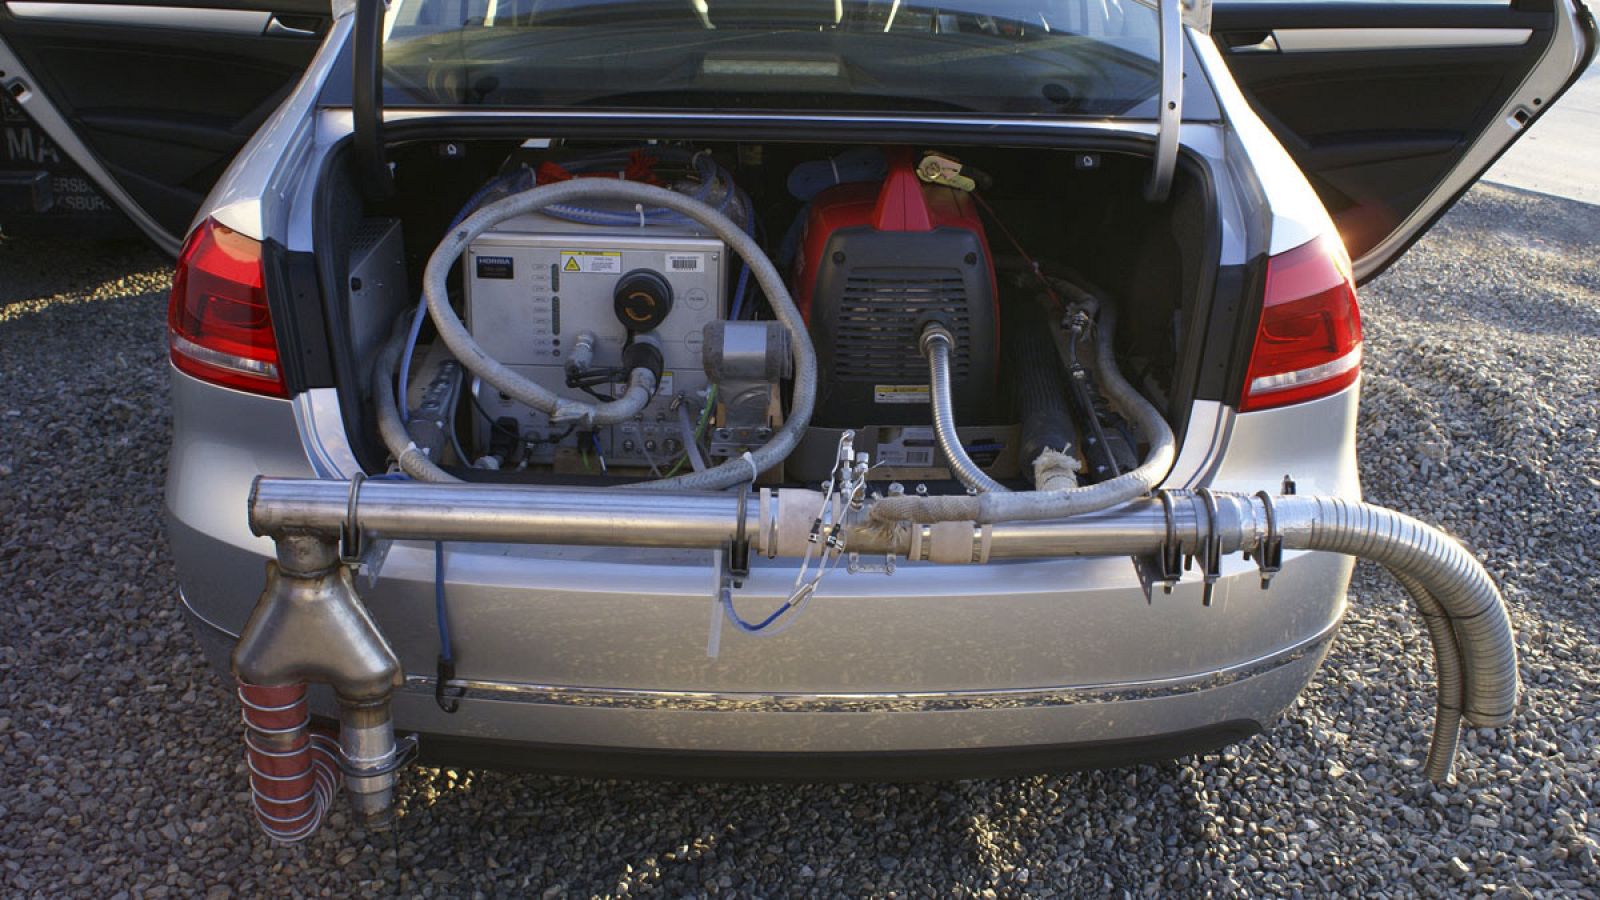 Instrumentos de medición instalados en un Volkswagen Passat para comprobar sus emisiones en circulación, durante las pruebas realizadas en la Universidad de Virginia Occidental que desvelaron el fraude